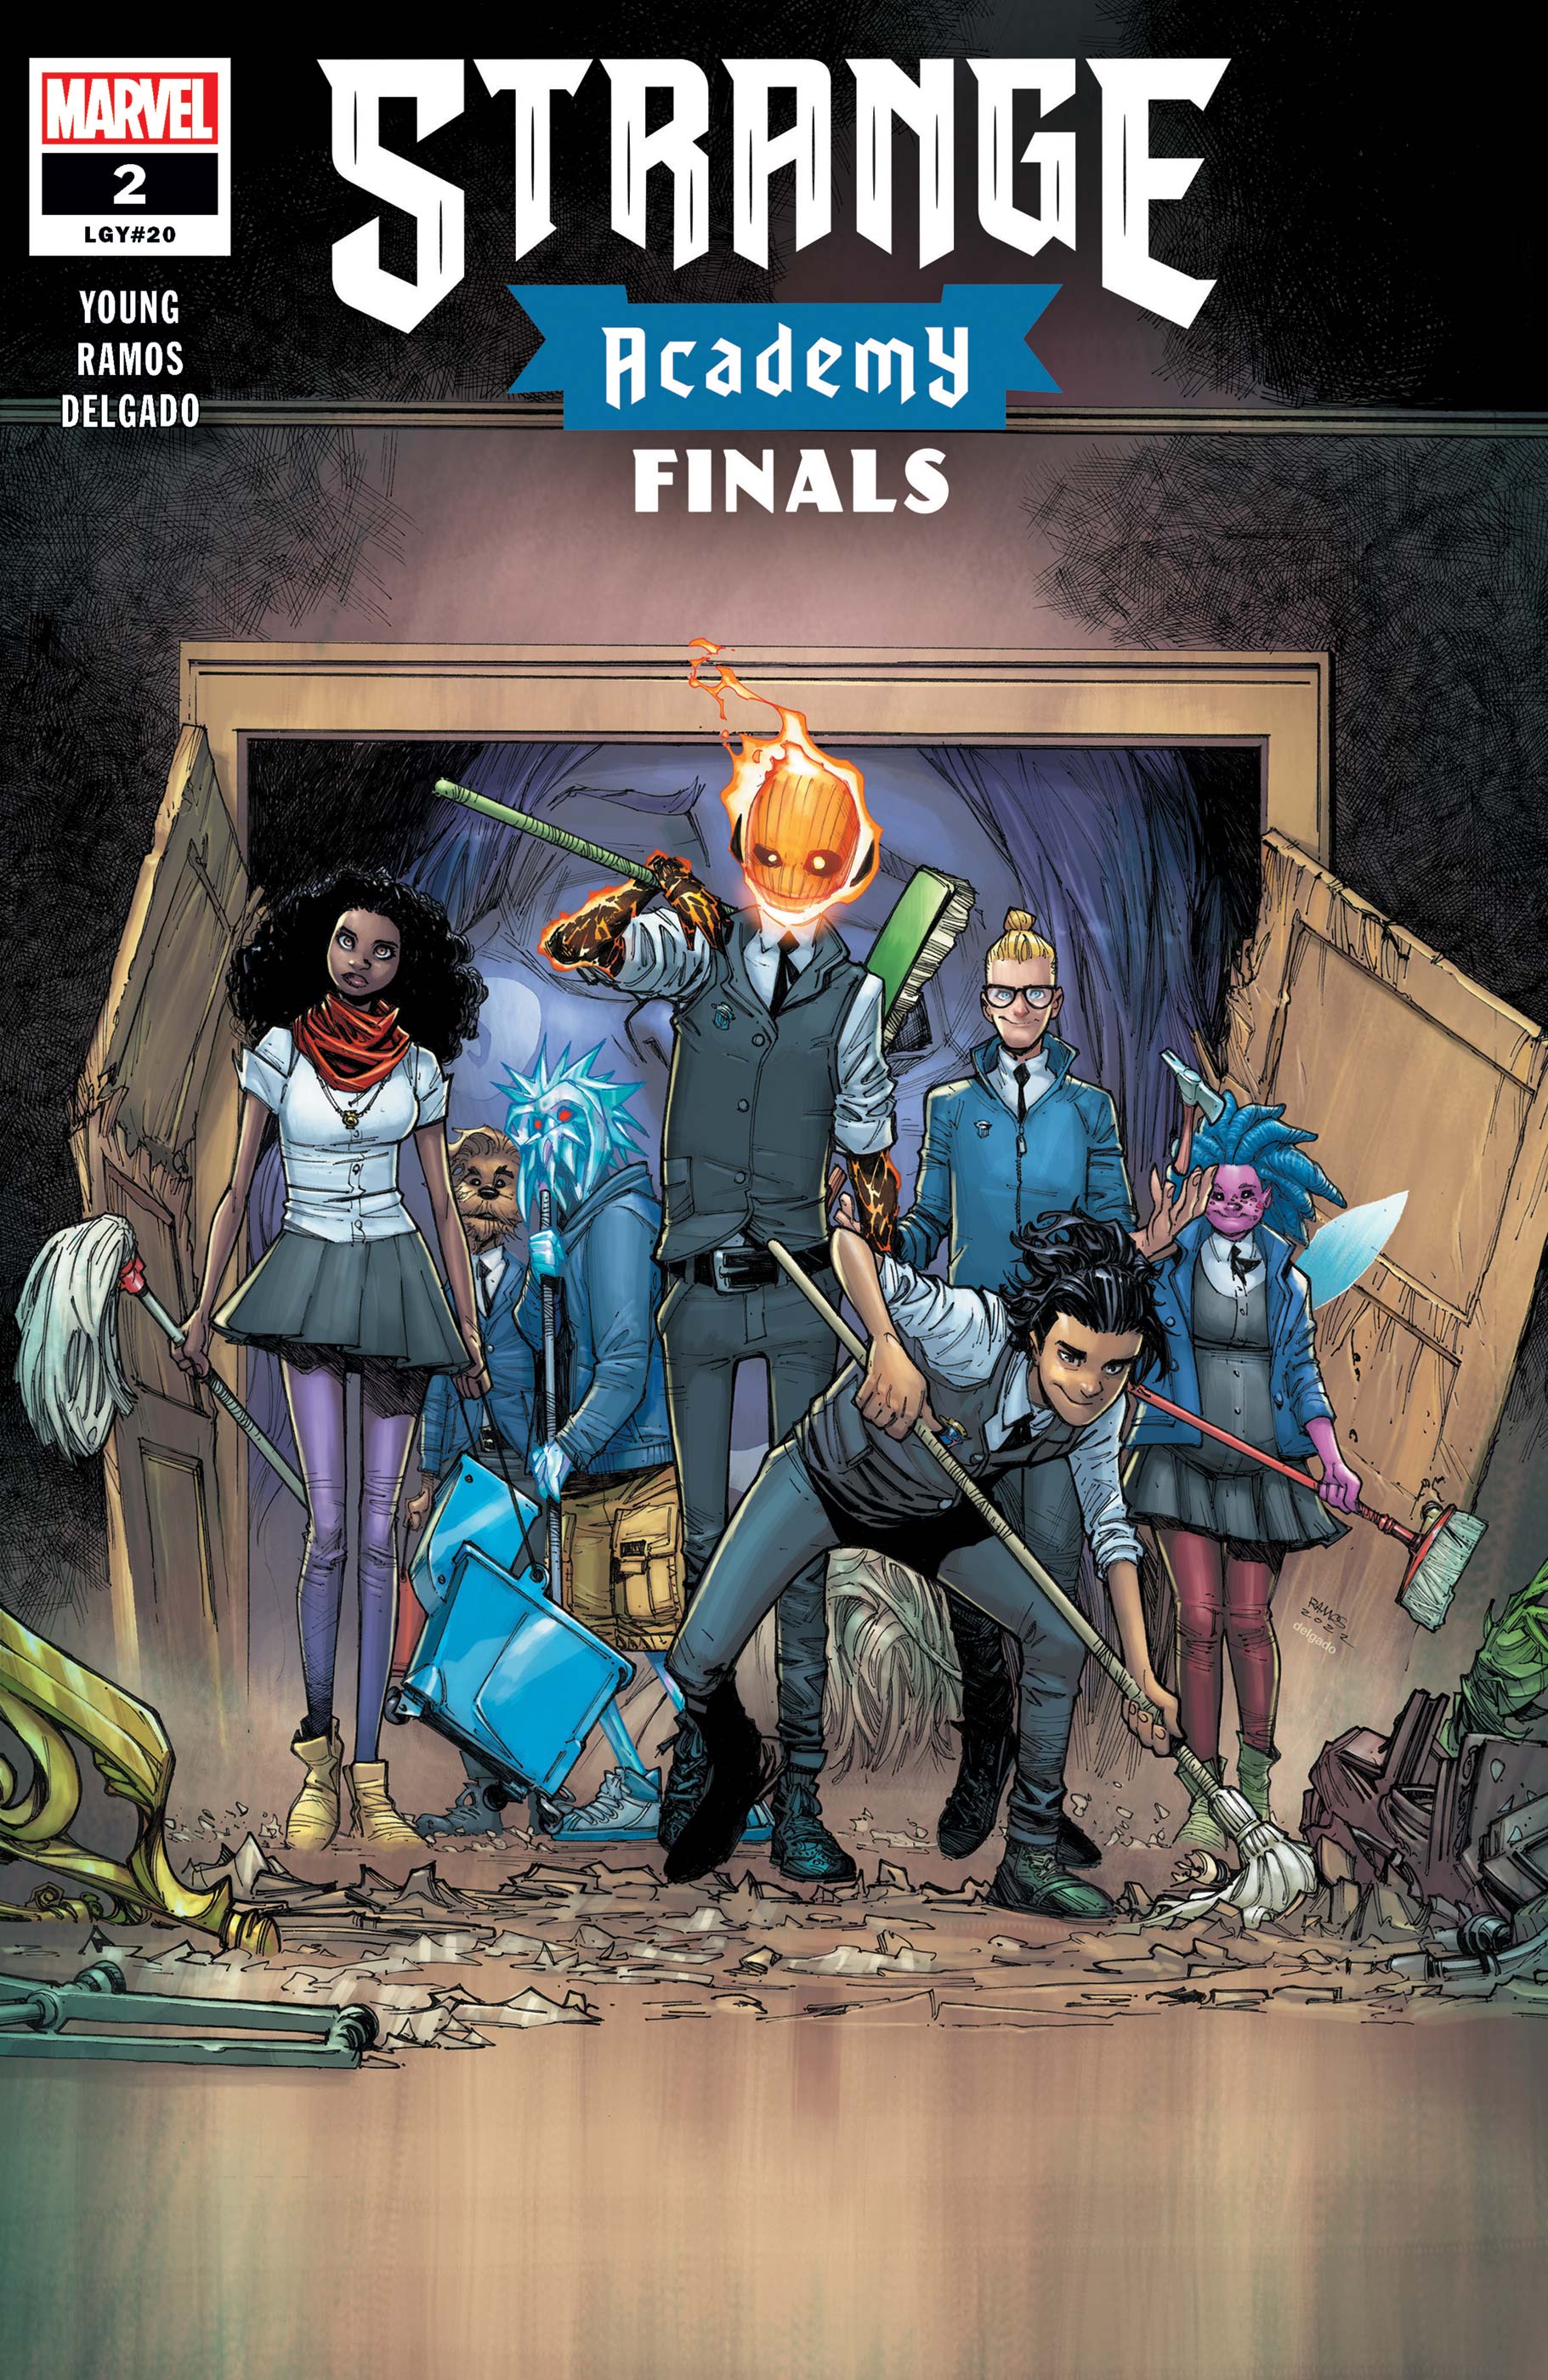 Strange Academy: Finals (2022) #2